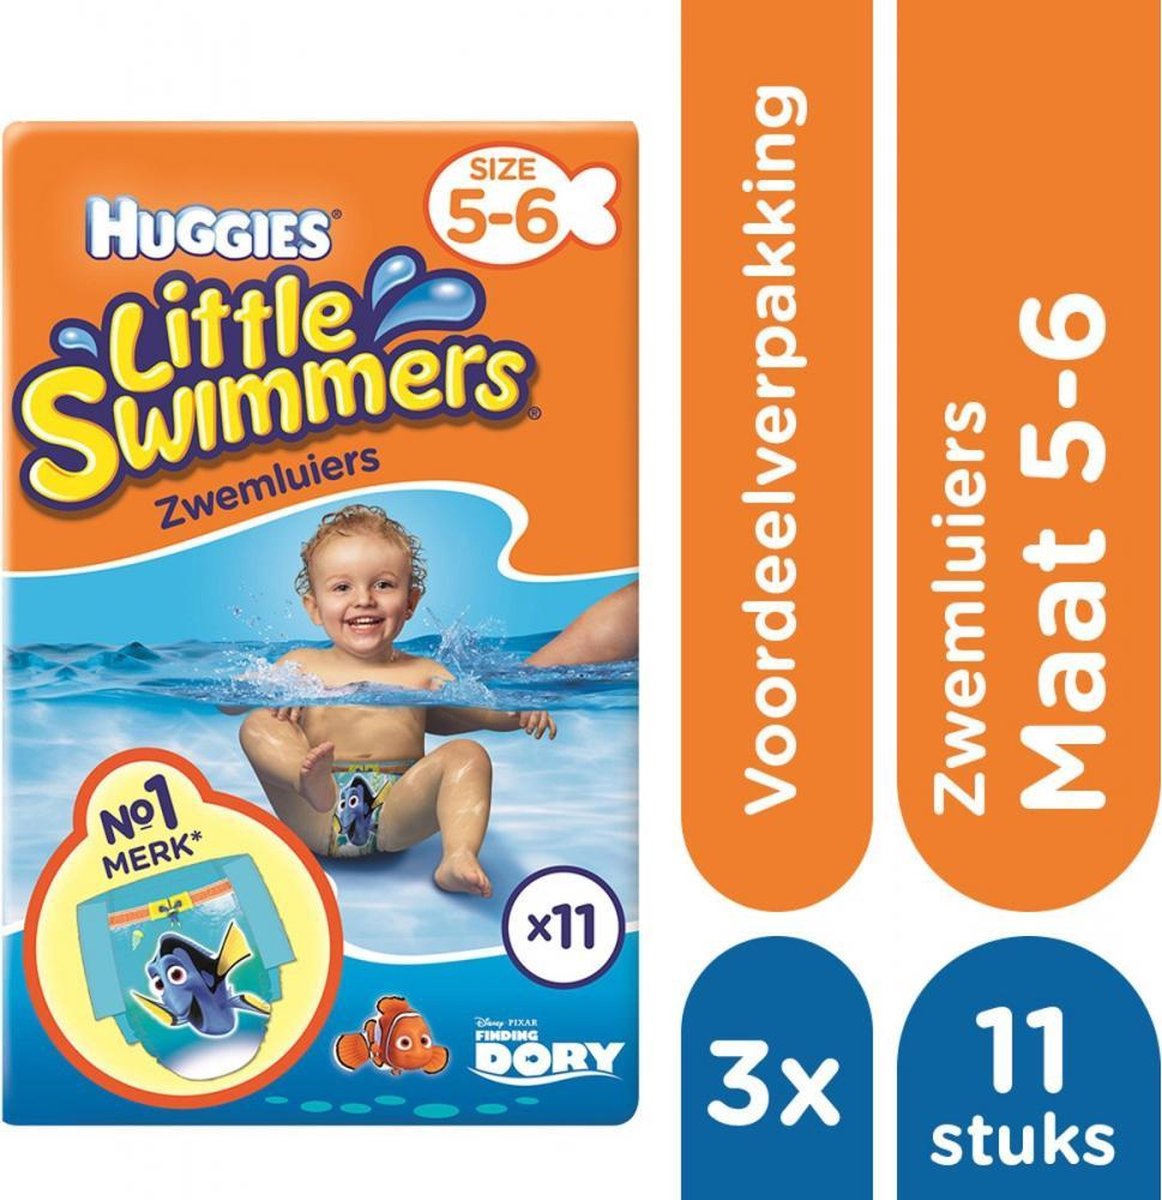 Huggies | Little Swimmers Zwemluiers mt 5-6 - 3 x 11 Stuks